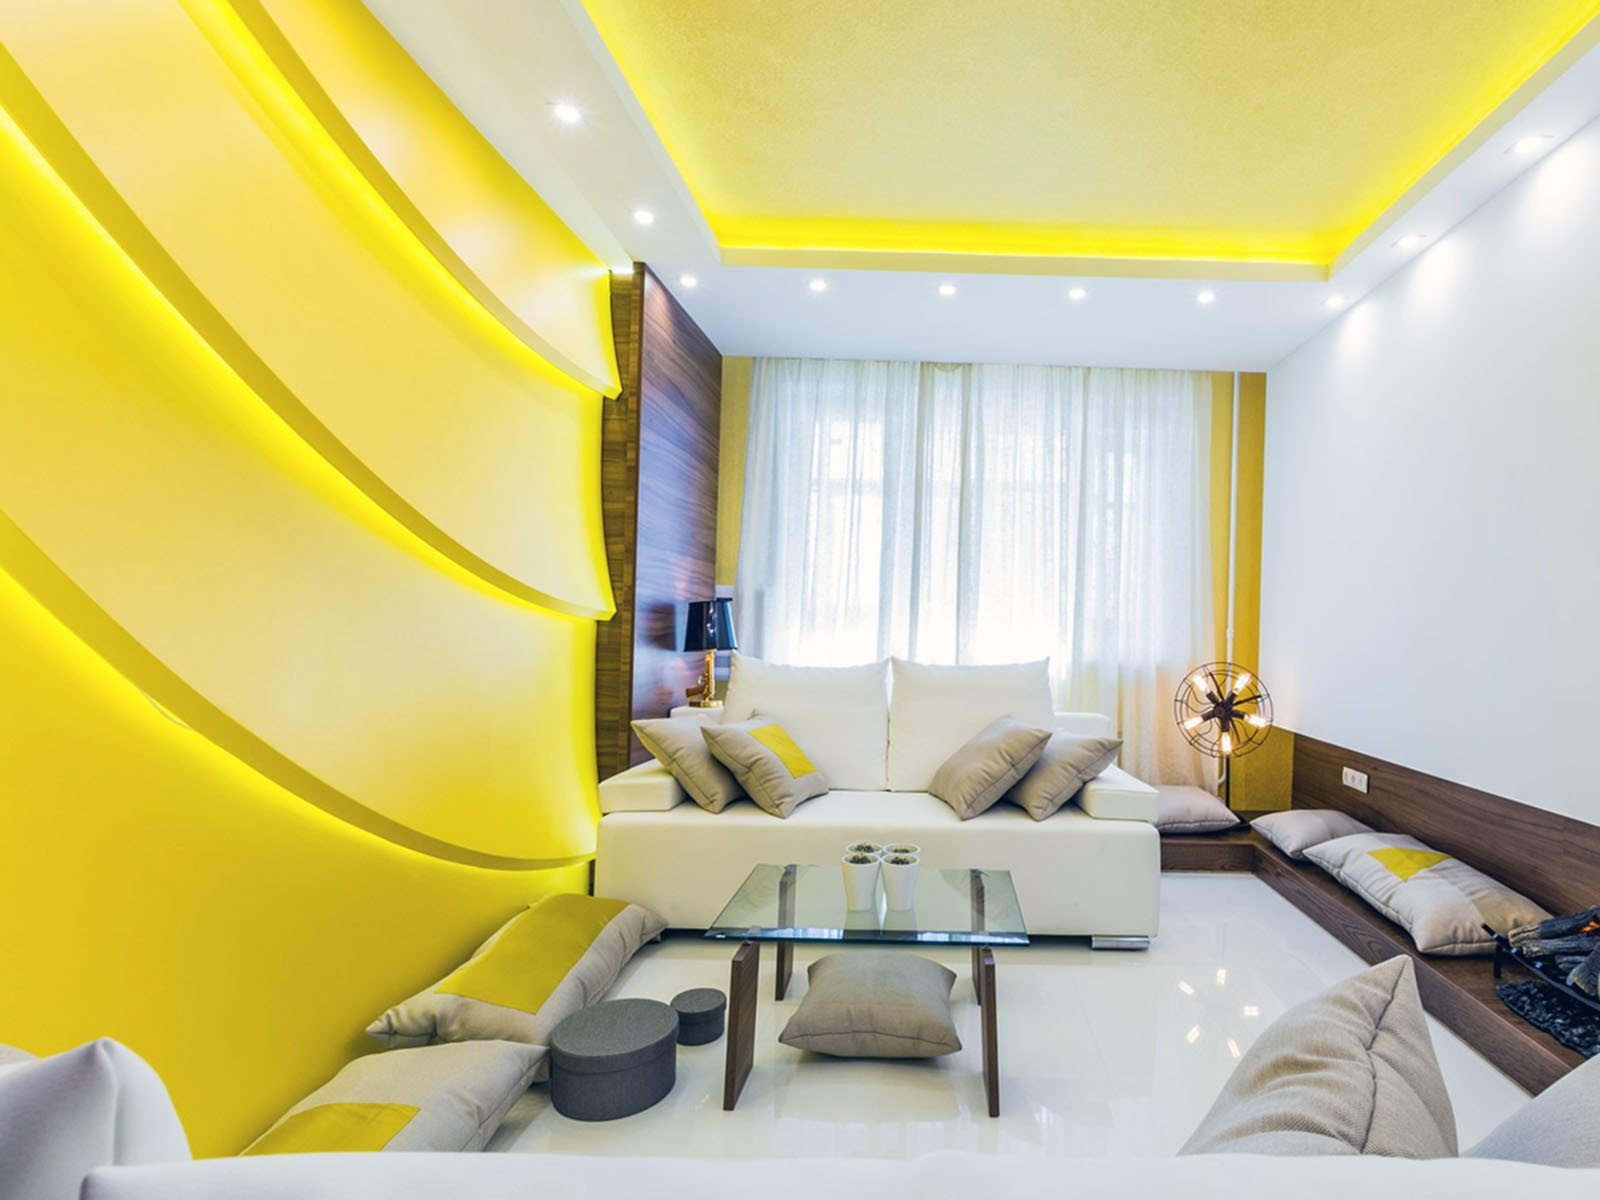 Свет яркий свет полон зал. Комната в желтом цвете. Желтый интерьер. Натяжные потолки желтого цвета. Желтый цвет в интерьере.